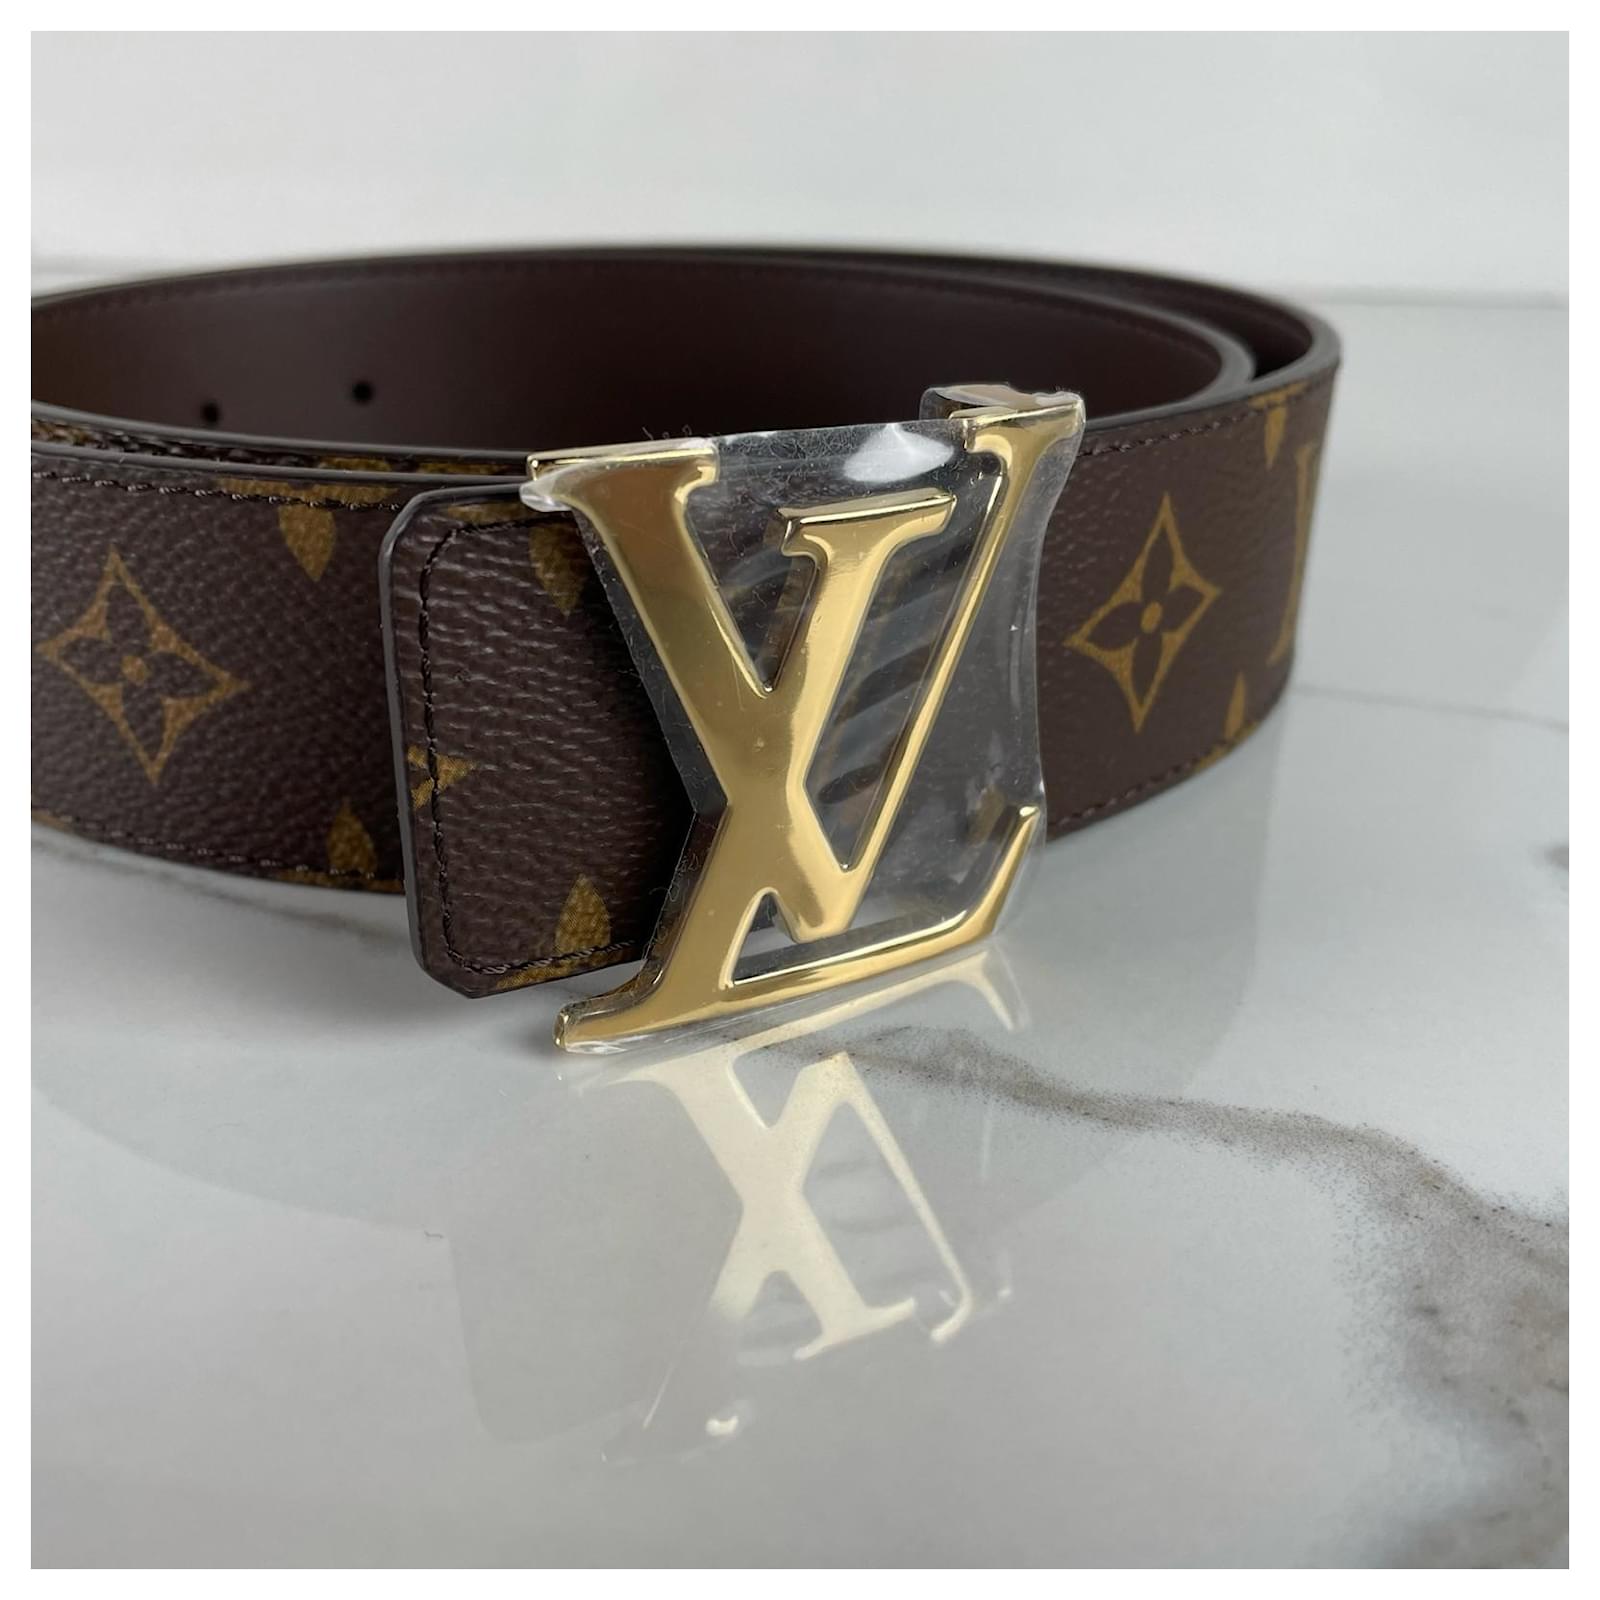 Louis Vuitton - LV Initials 40mm Reversible Belt - Damier Canvas - Brown - Size: 90 cm - Luxury